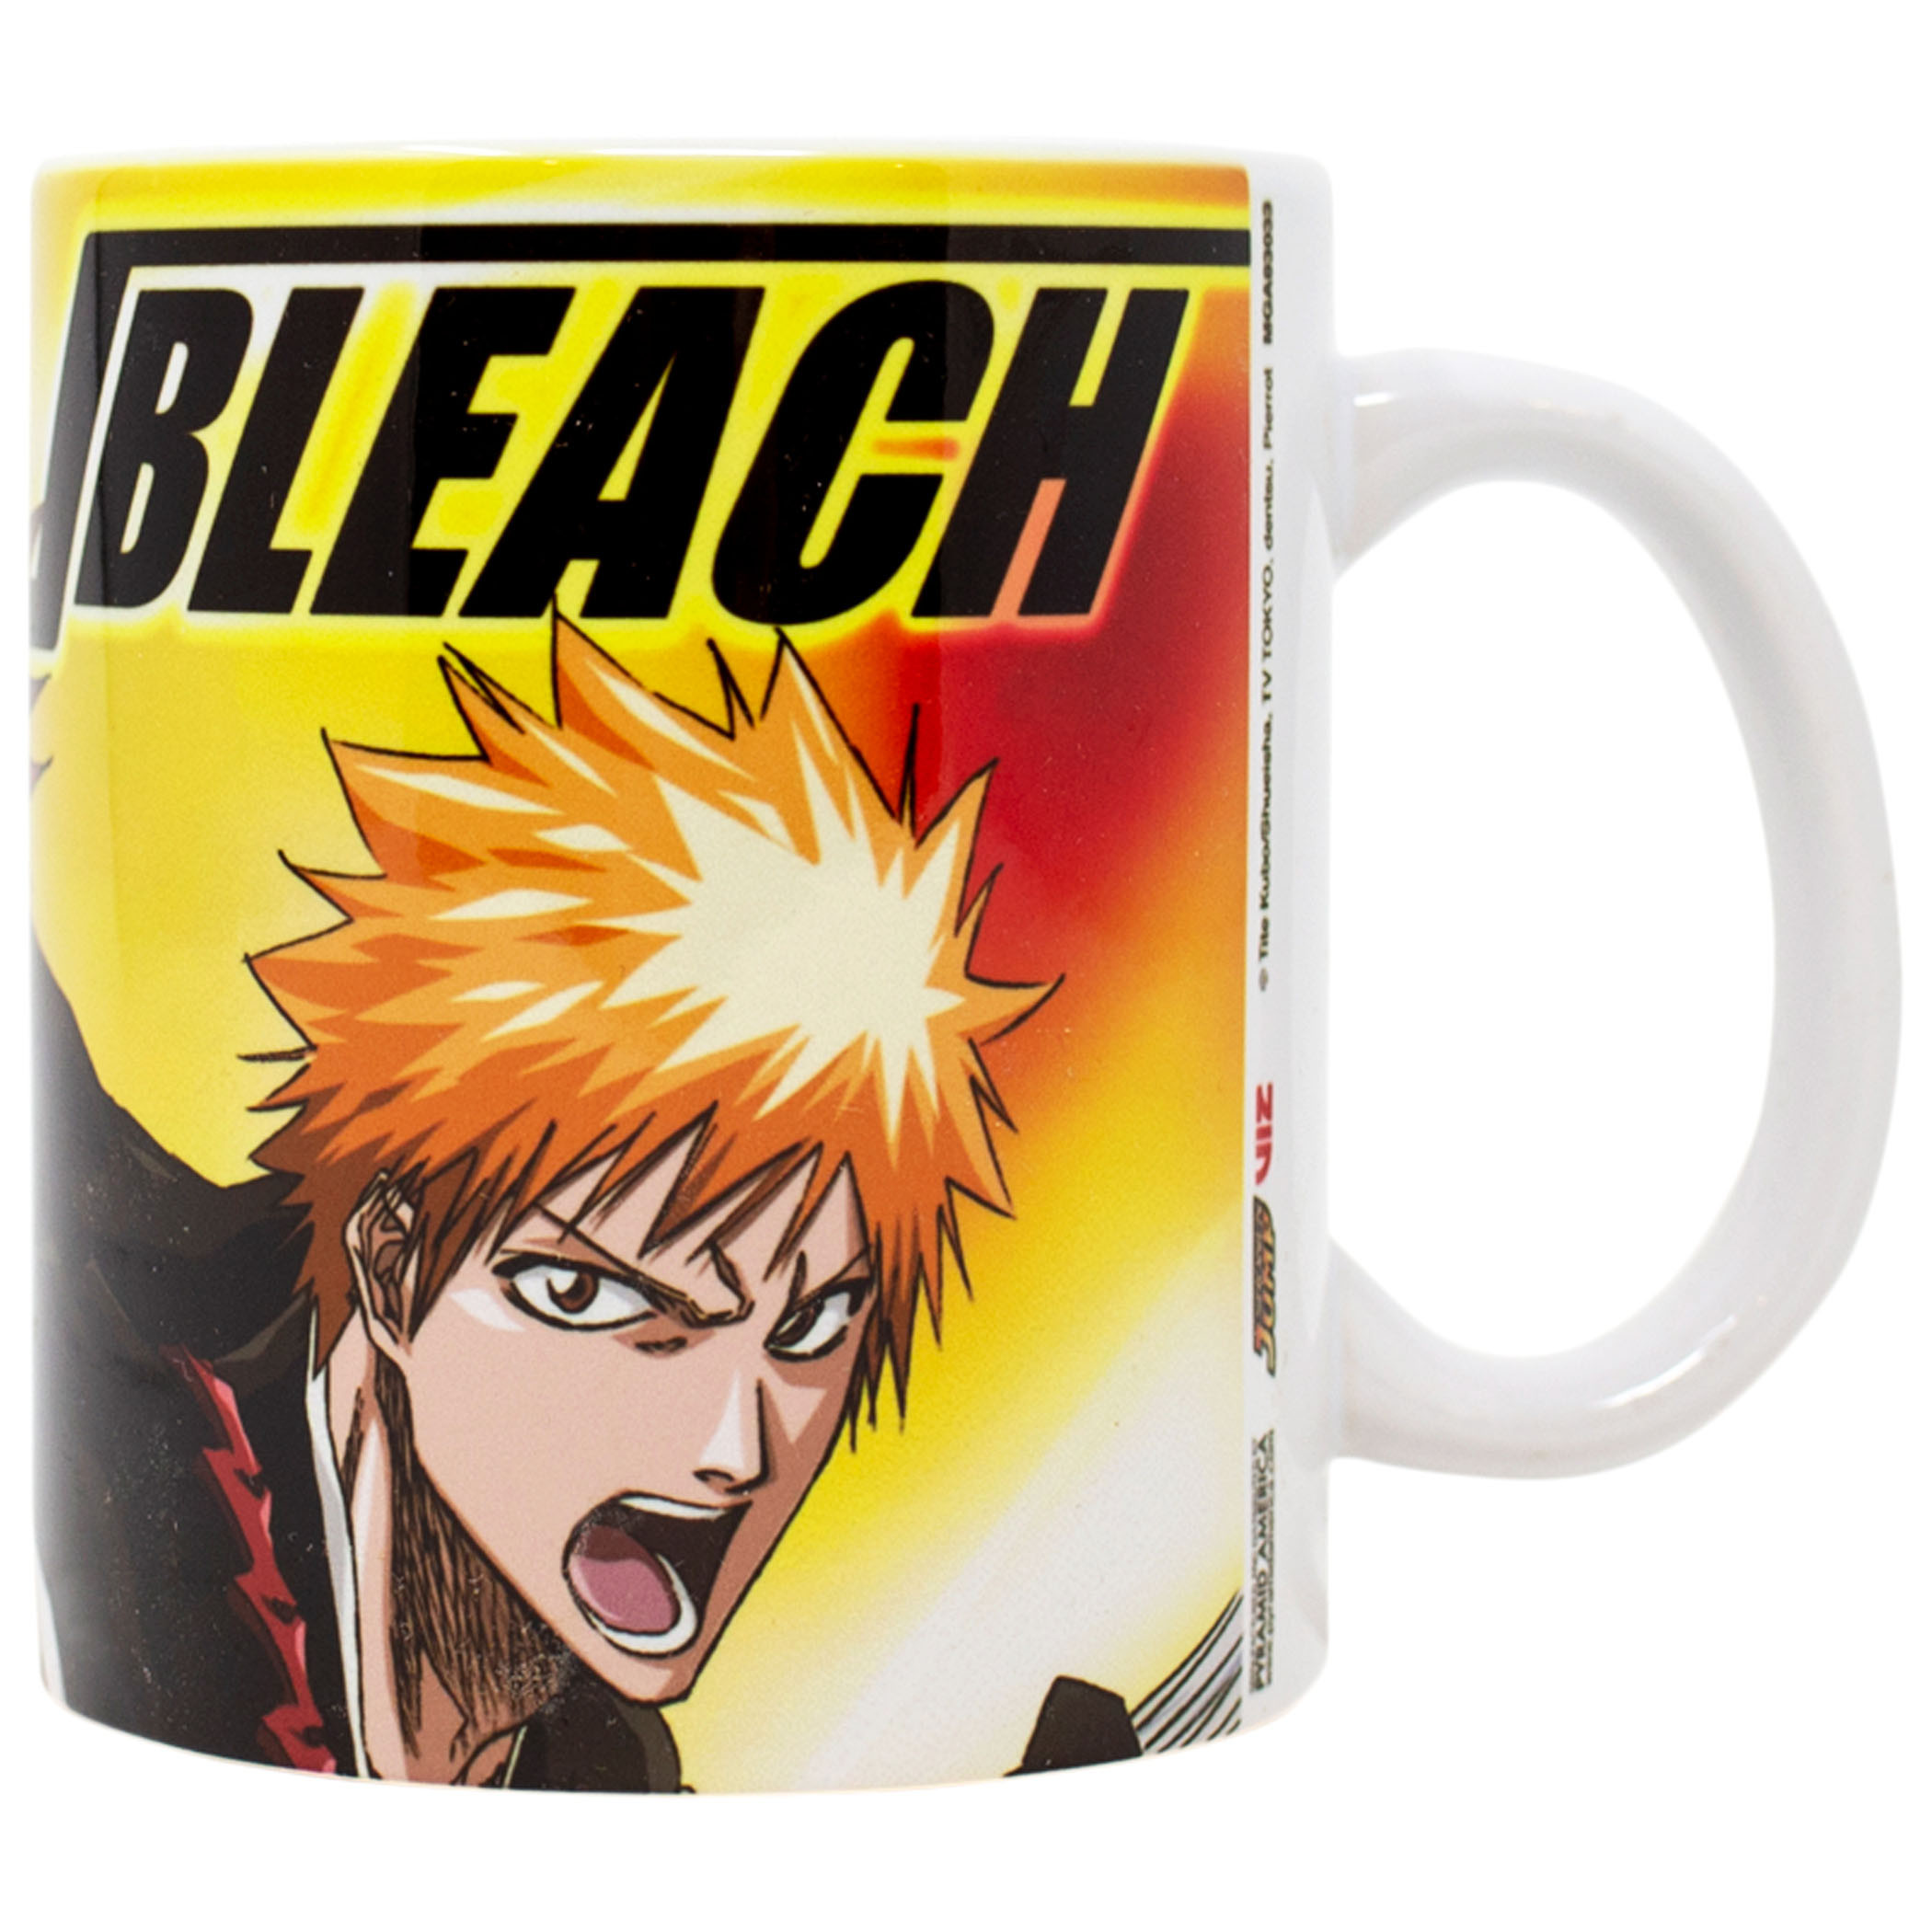 Bleach Ichigo & Renji 11oz. Ceramic Mug